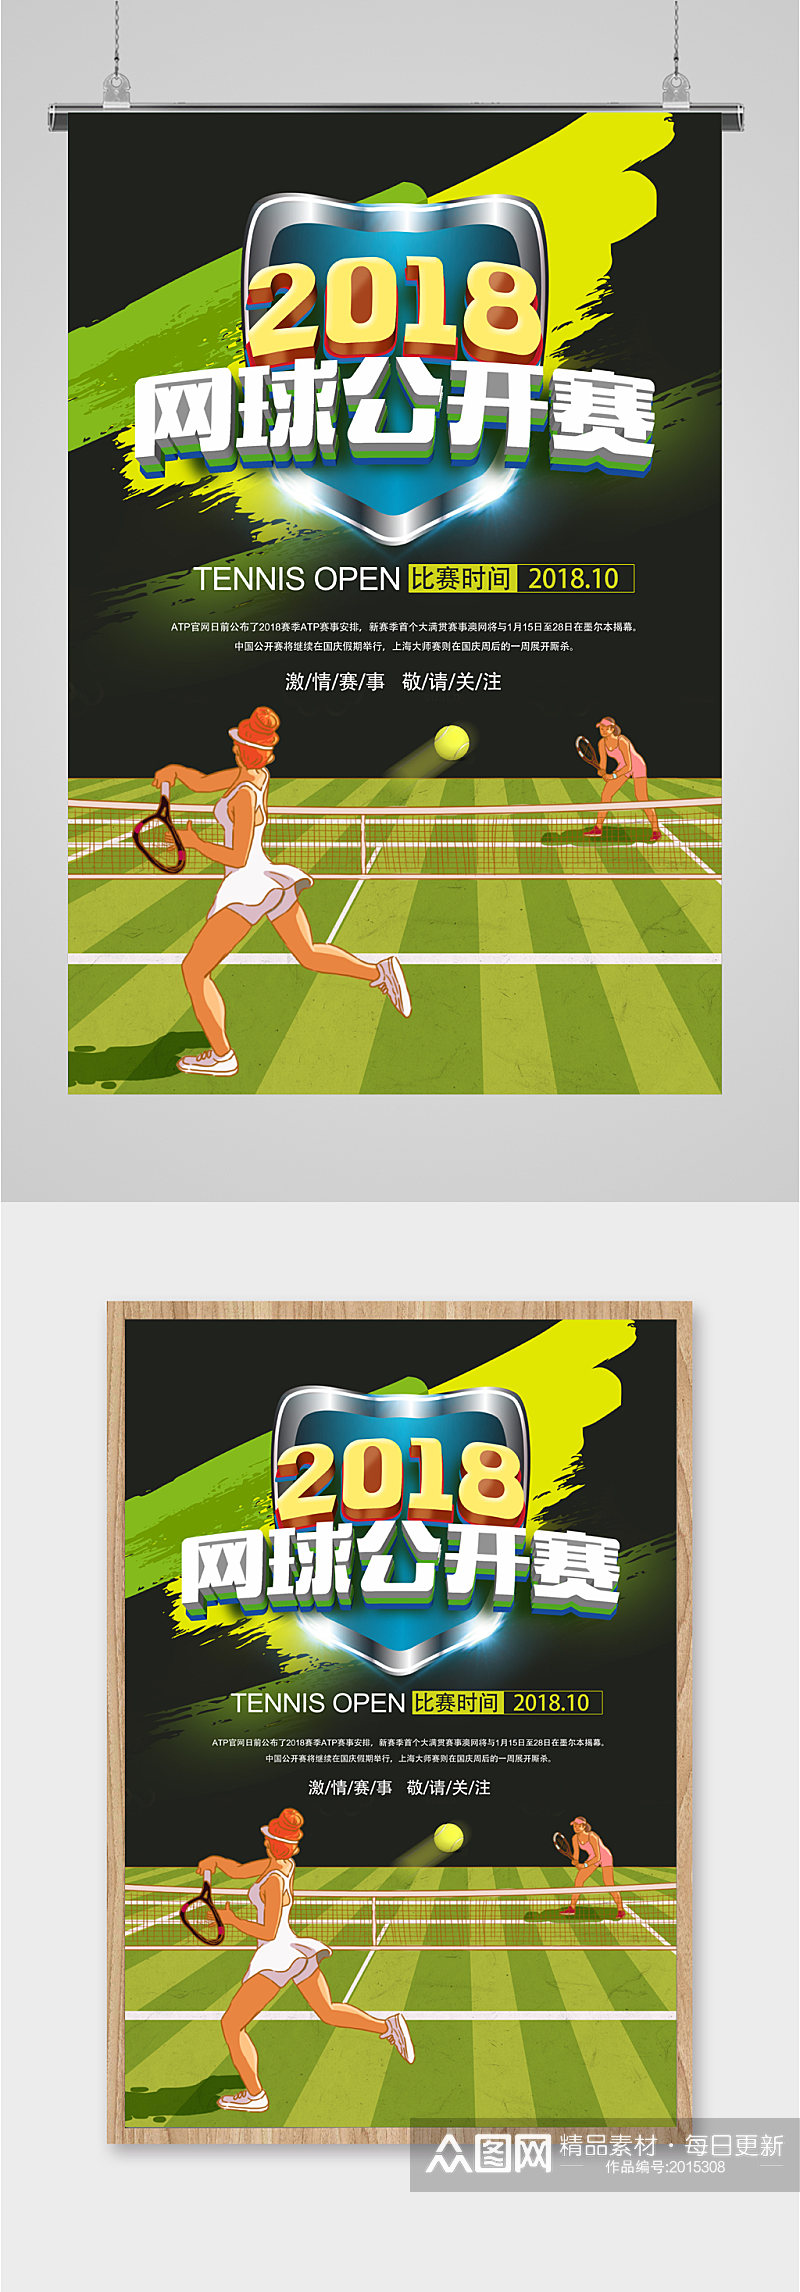 网球公开赛赛事海报素材